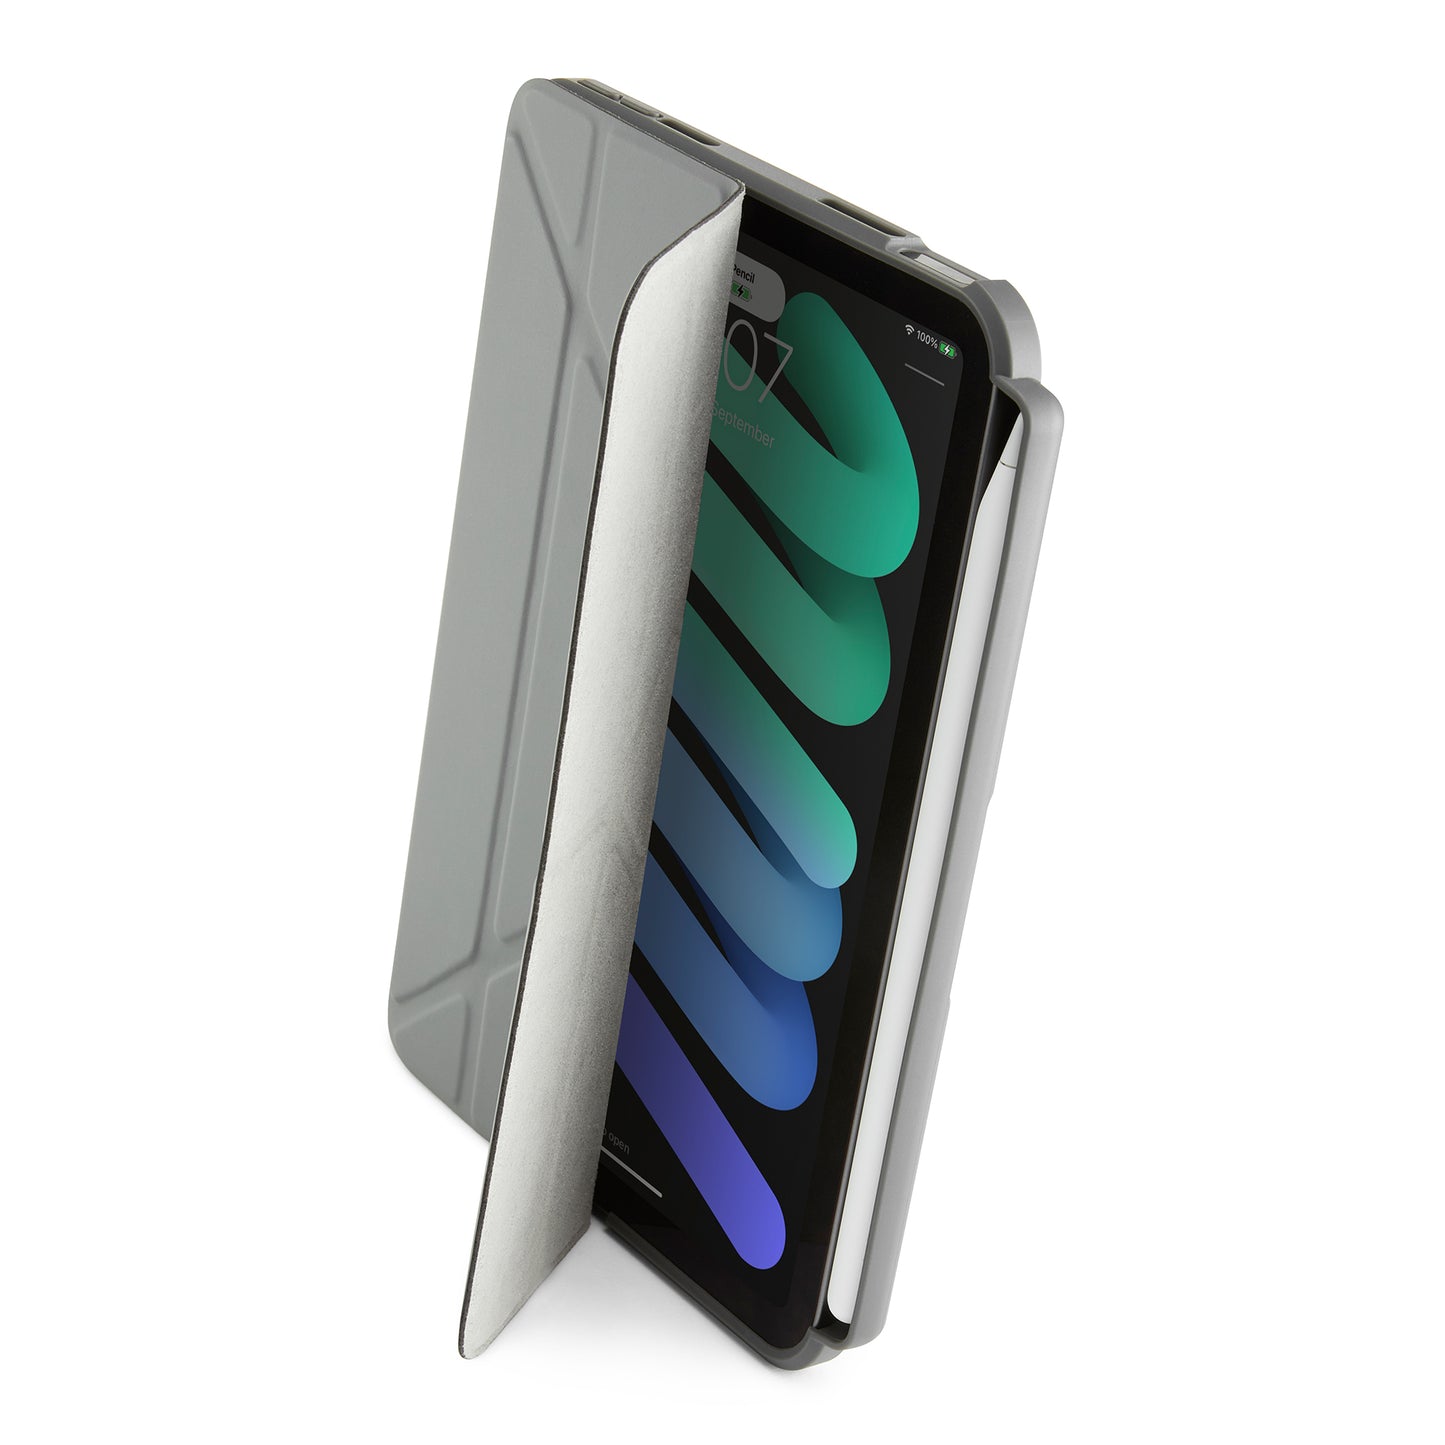 PIPETTO Origami No.3 Case for iPad Mini 6th Gen (2021) - Dark Grey